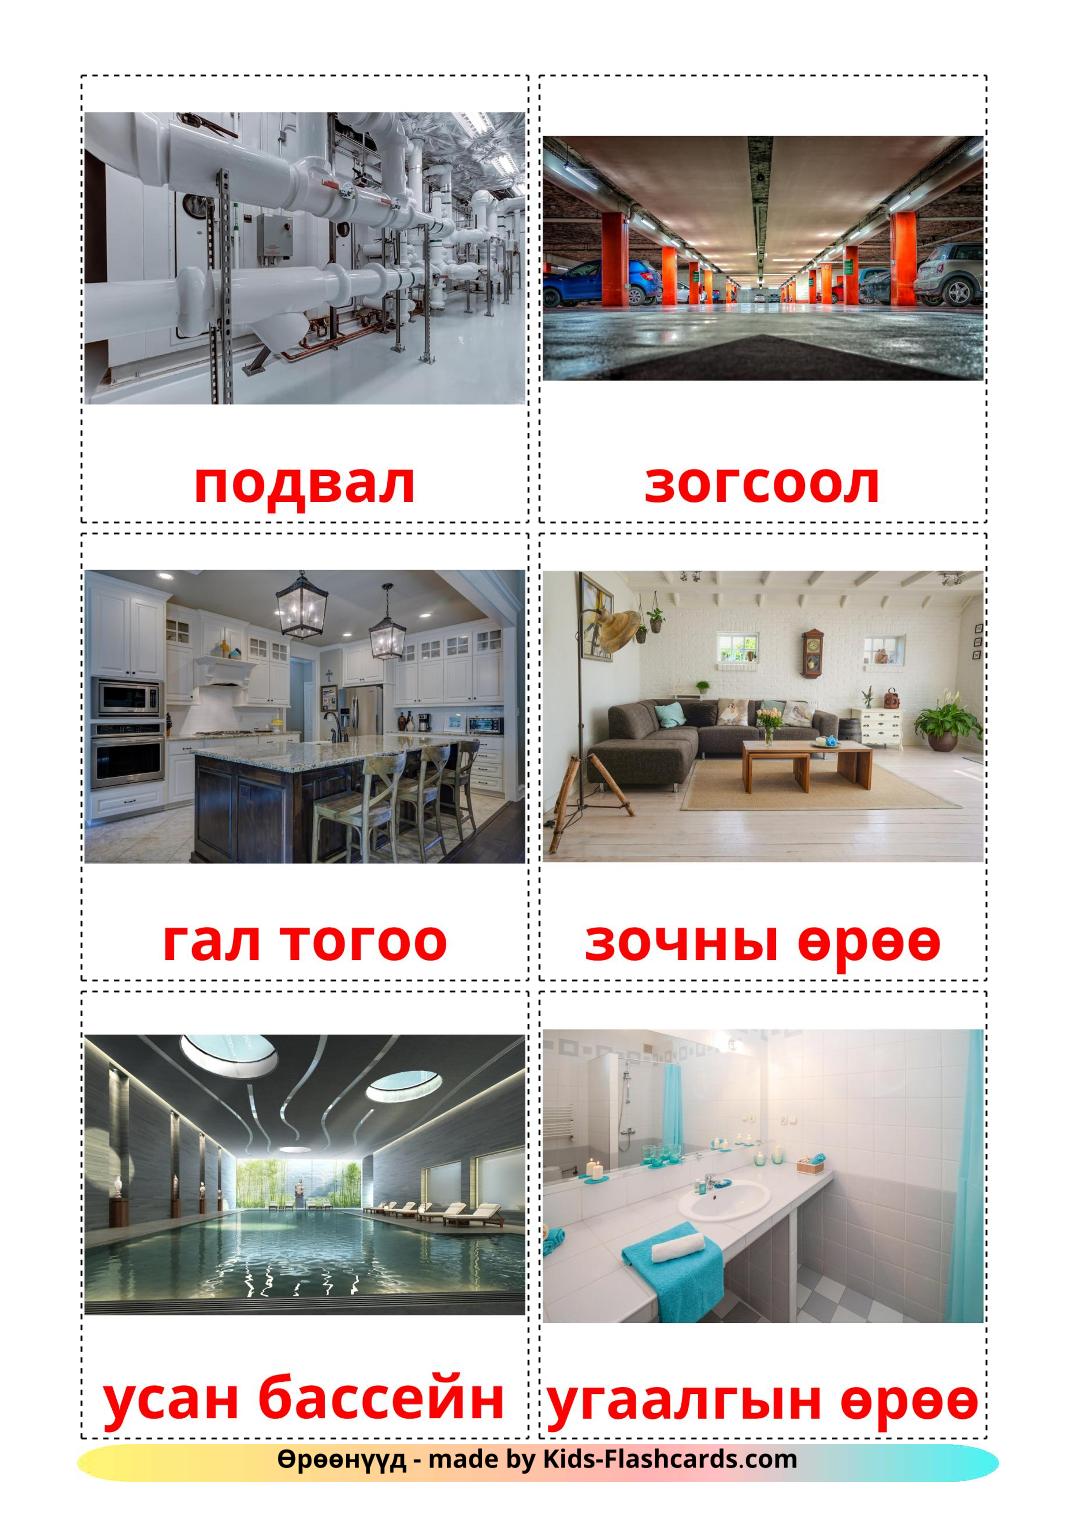 Salle - 17 Flashcards mongol imprimables gratuitement